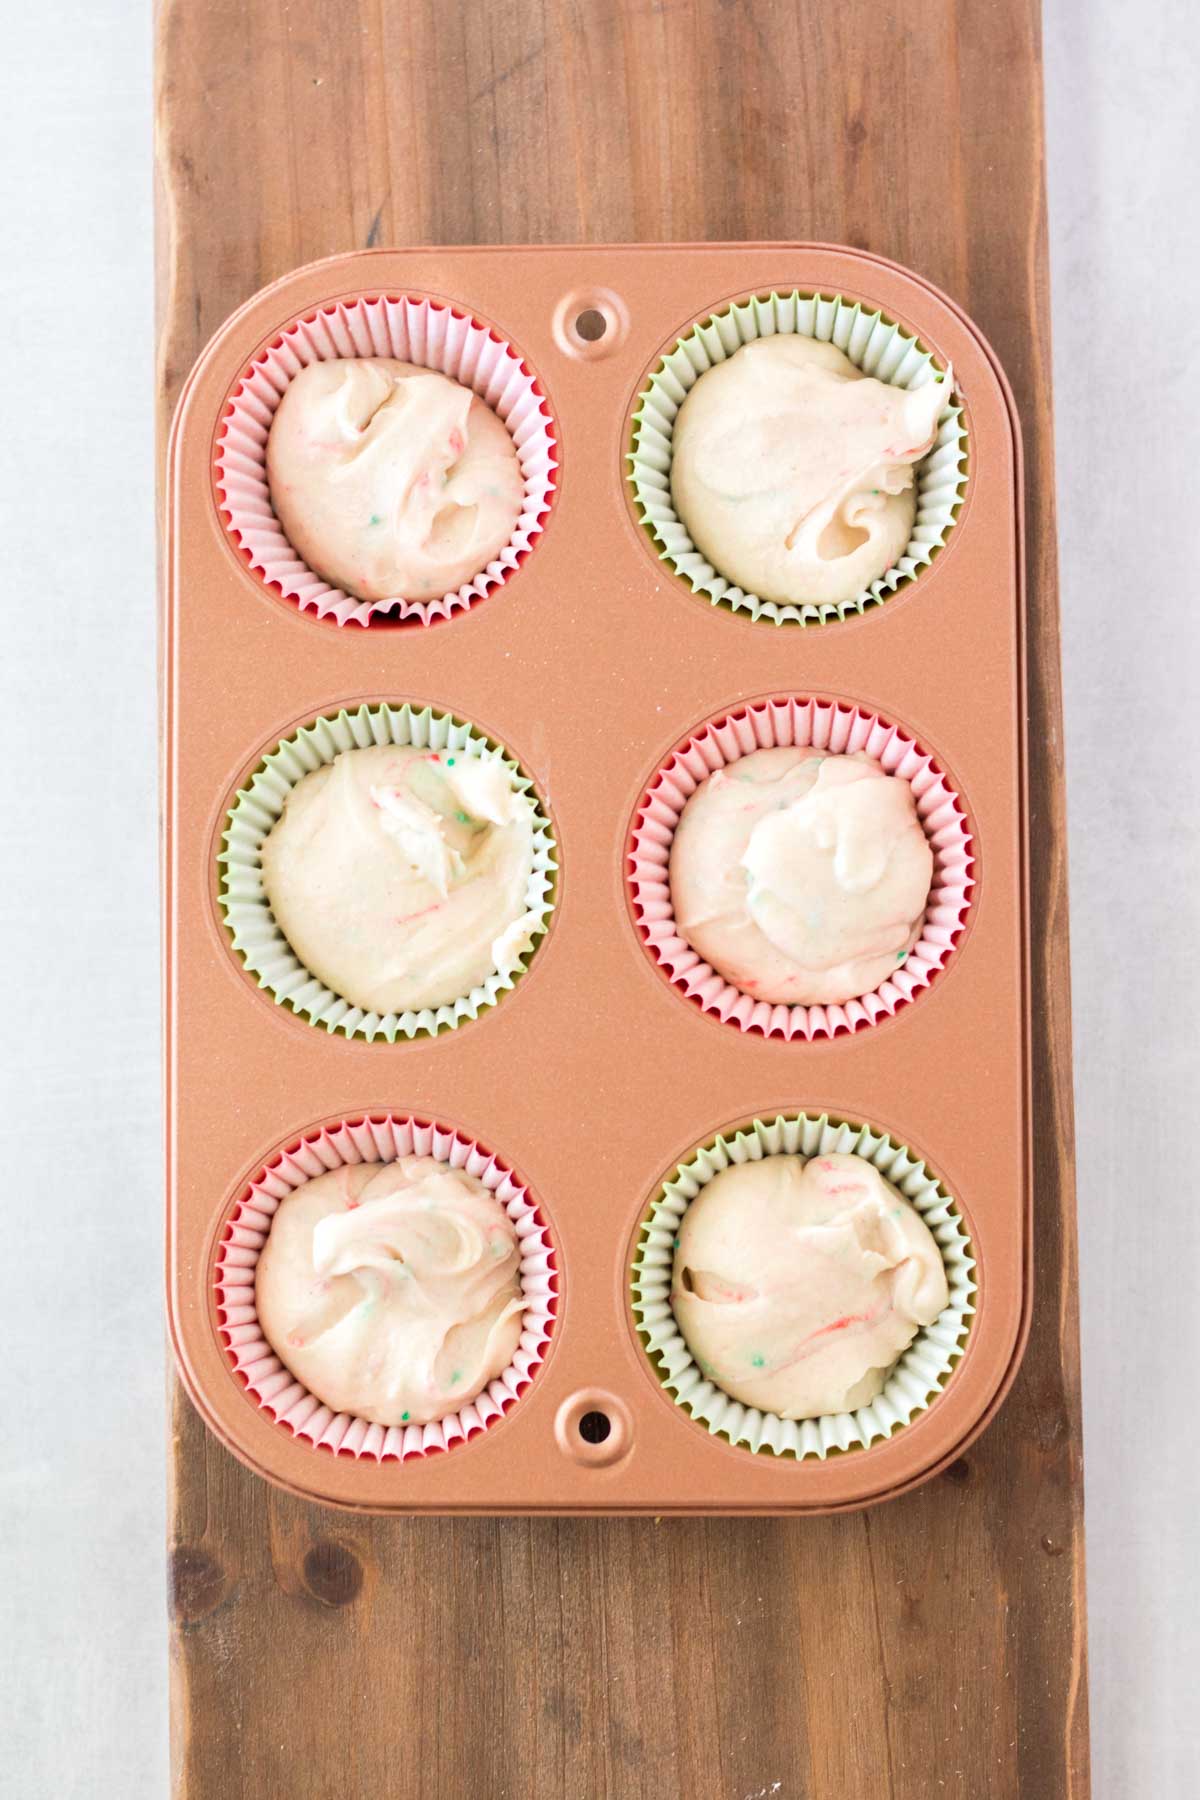 cupcake batter in cupcake tins